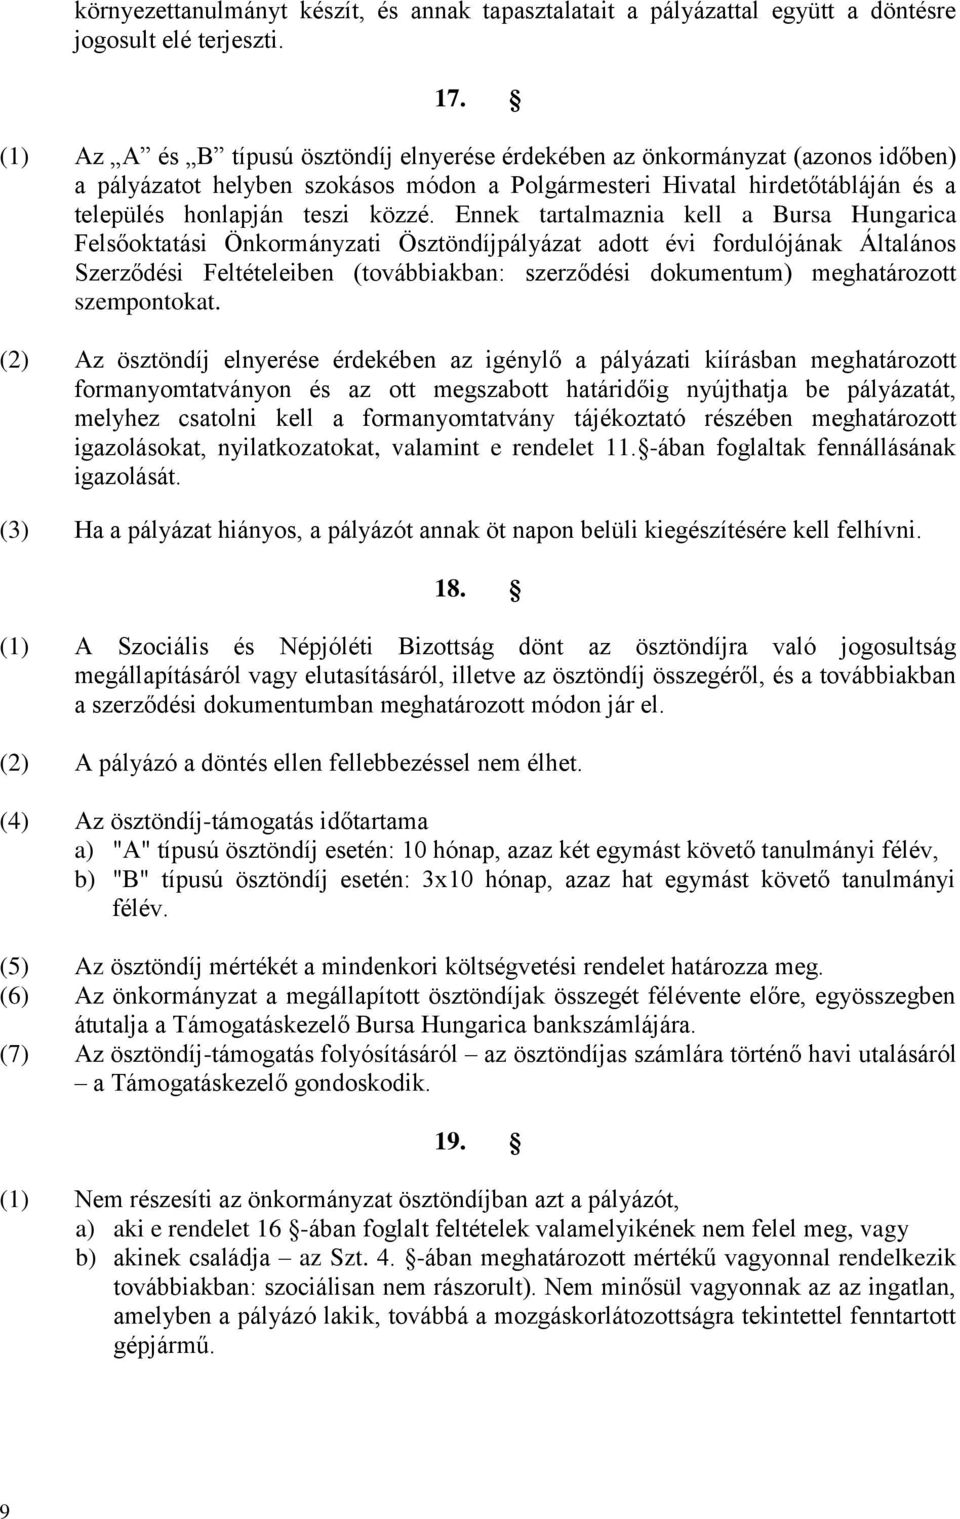 Ennek tartalmaznia kell a Bursa Hungarica Felsőoktatási Önkormányzati Ösztöndíjpályázat adott évi fordulójának Általános Szerződési Feltételeiben (továbbiakban: szerződési dokumentum) meghatározott